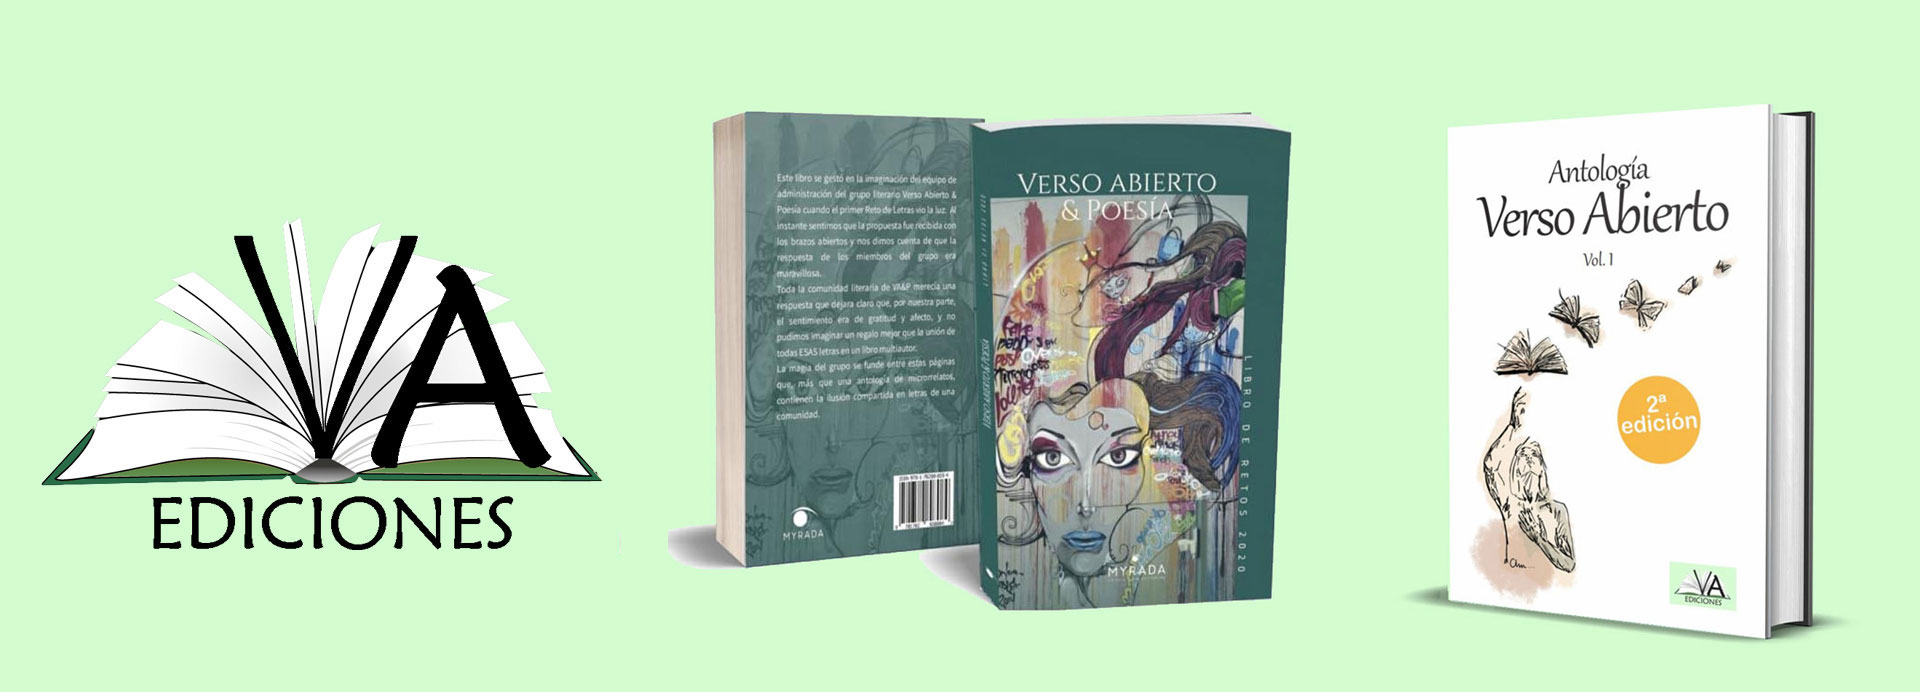 Ediciones Verso Abierto